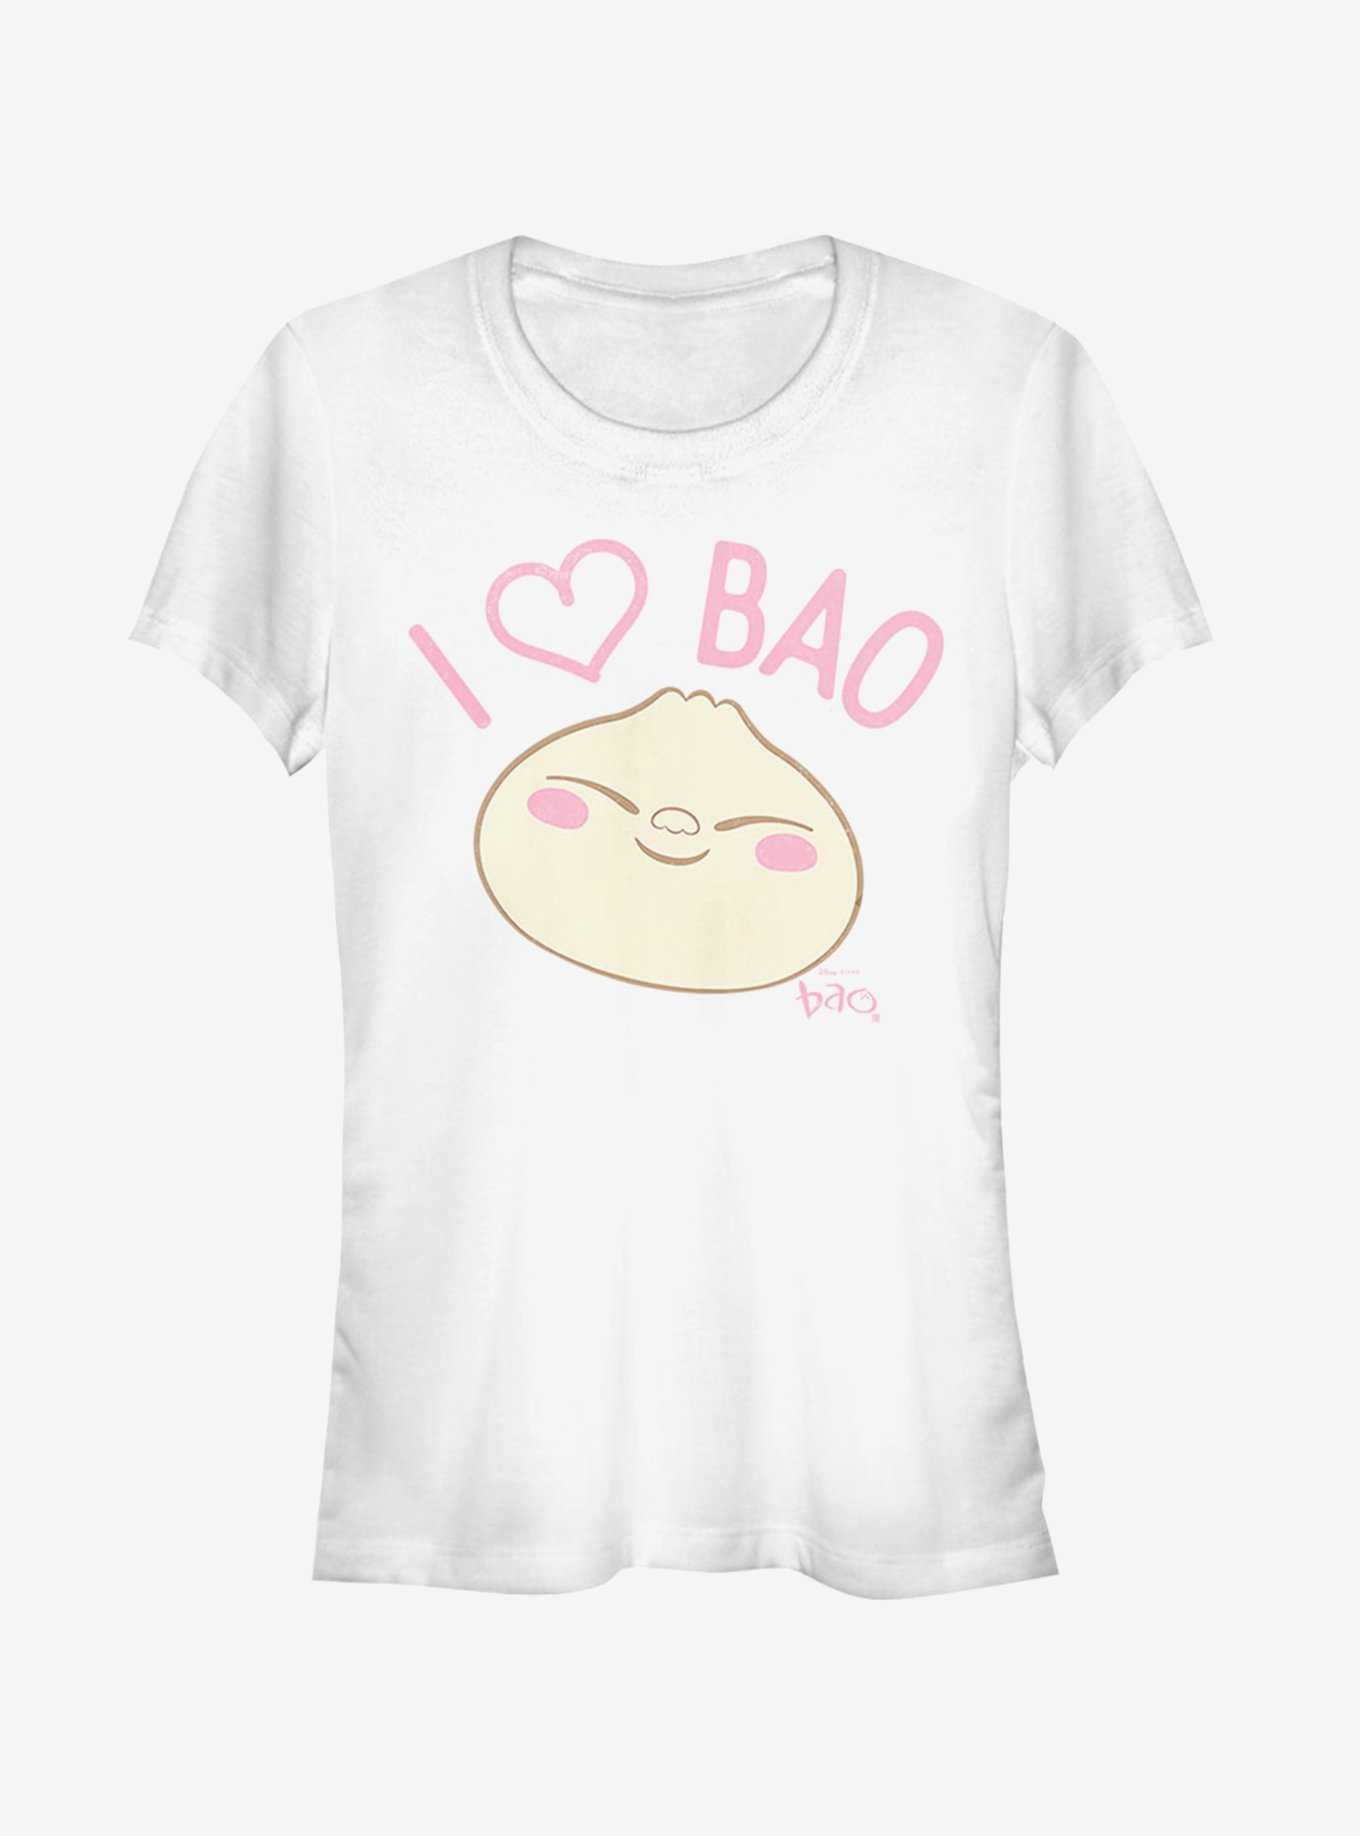 Disney Pixar Bao I Love Bao Girls T-Shirt, , hi-res